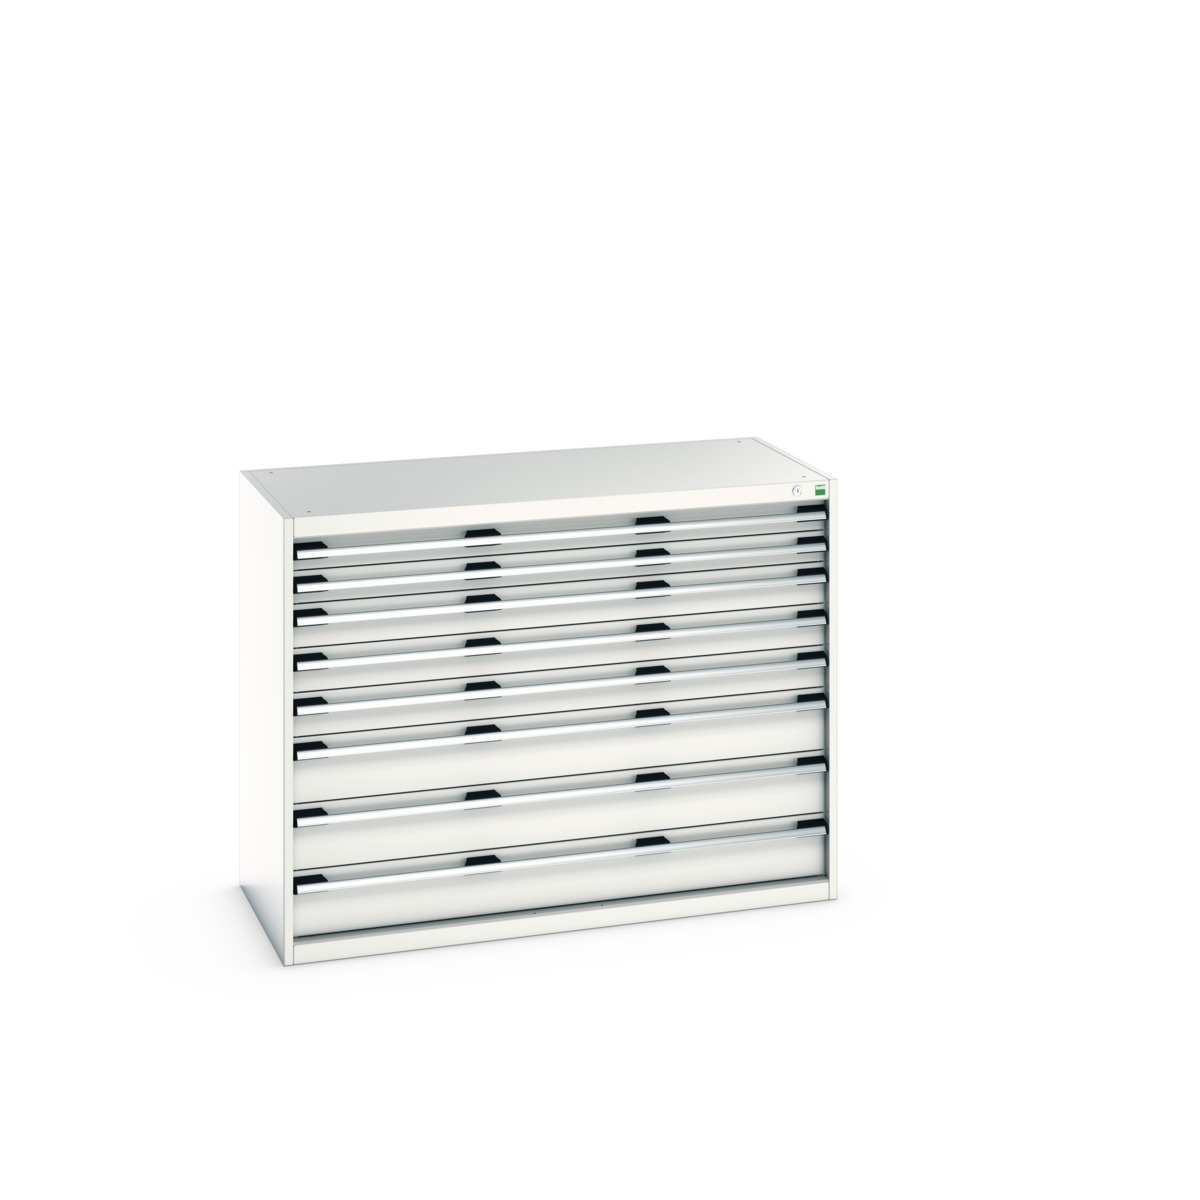 40022153.16V - cubio drawer cabinet